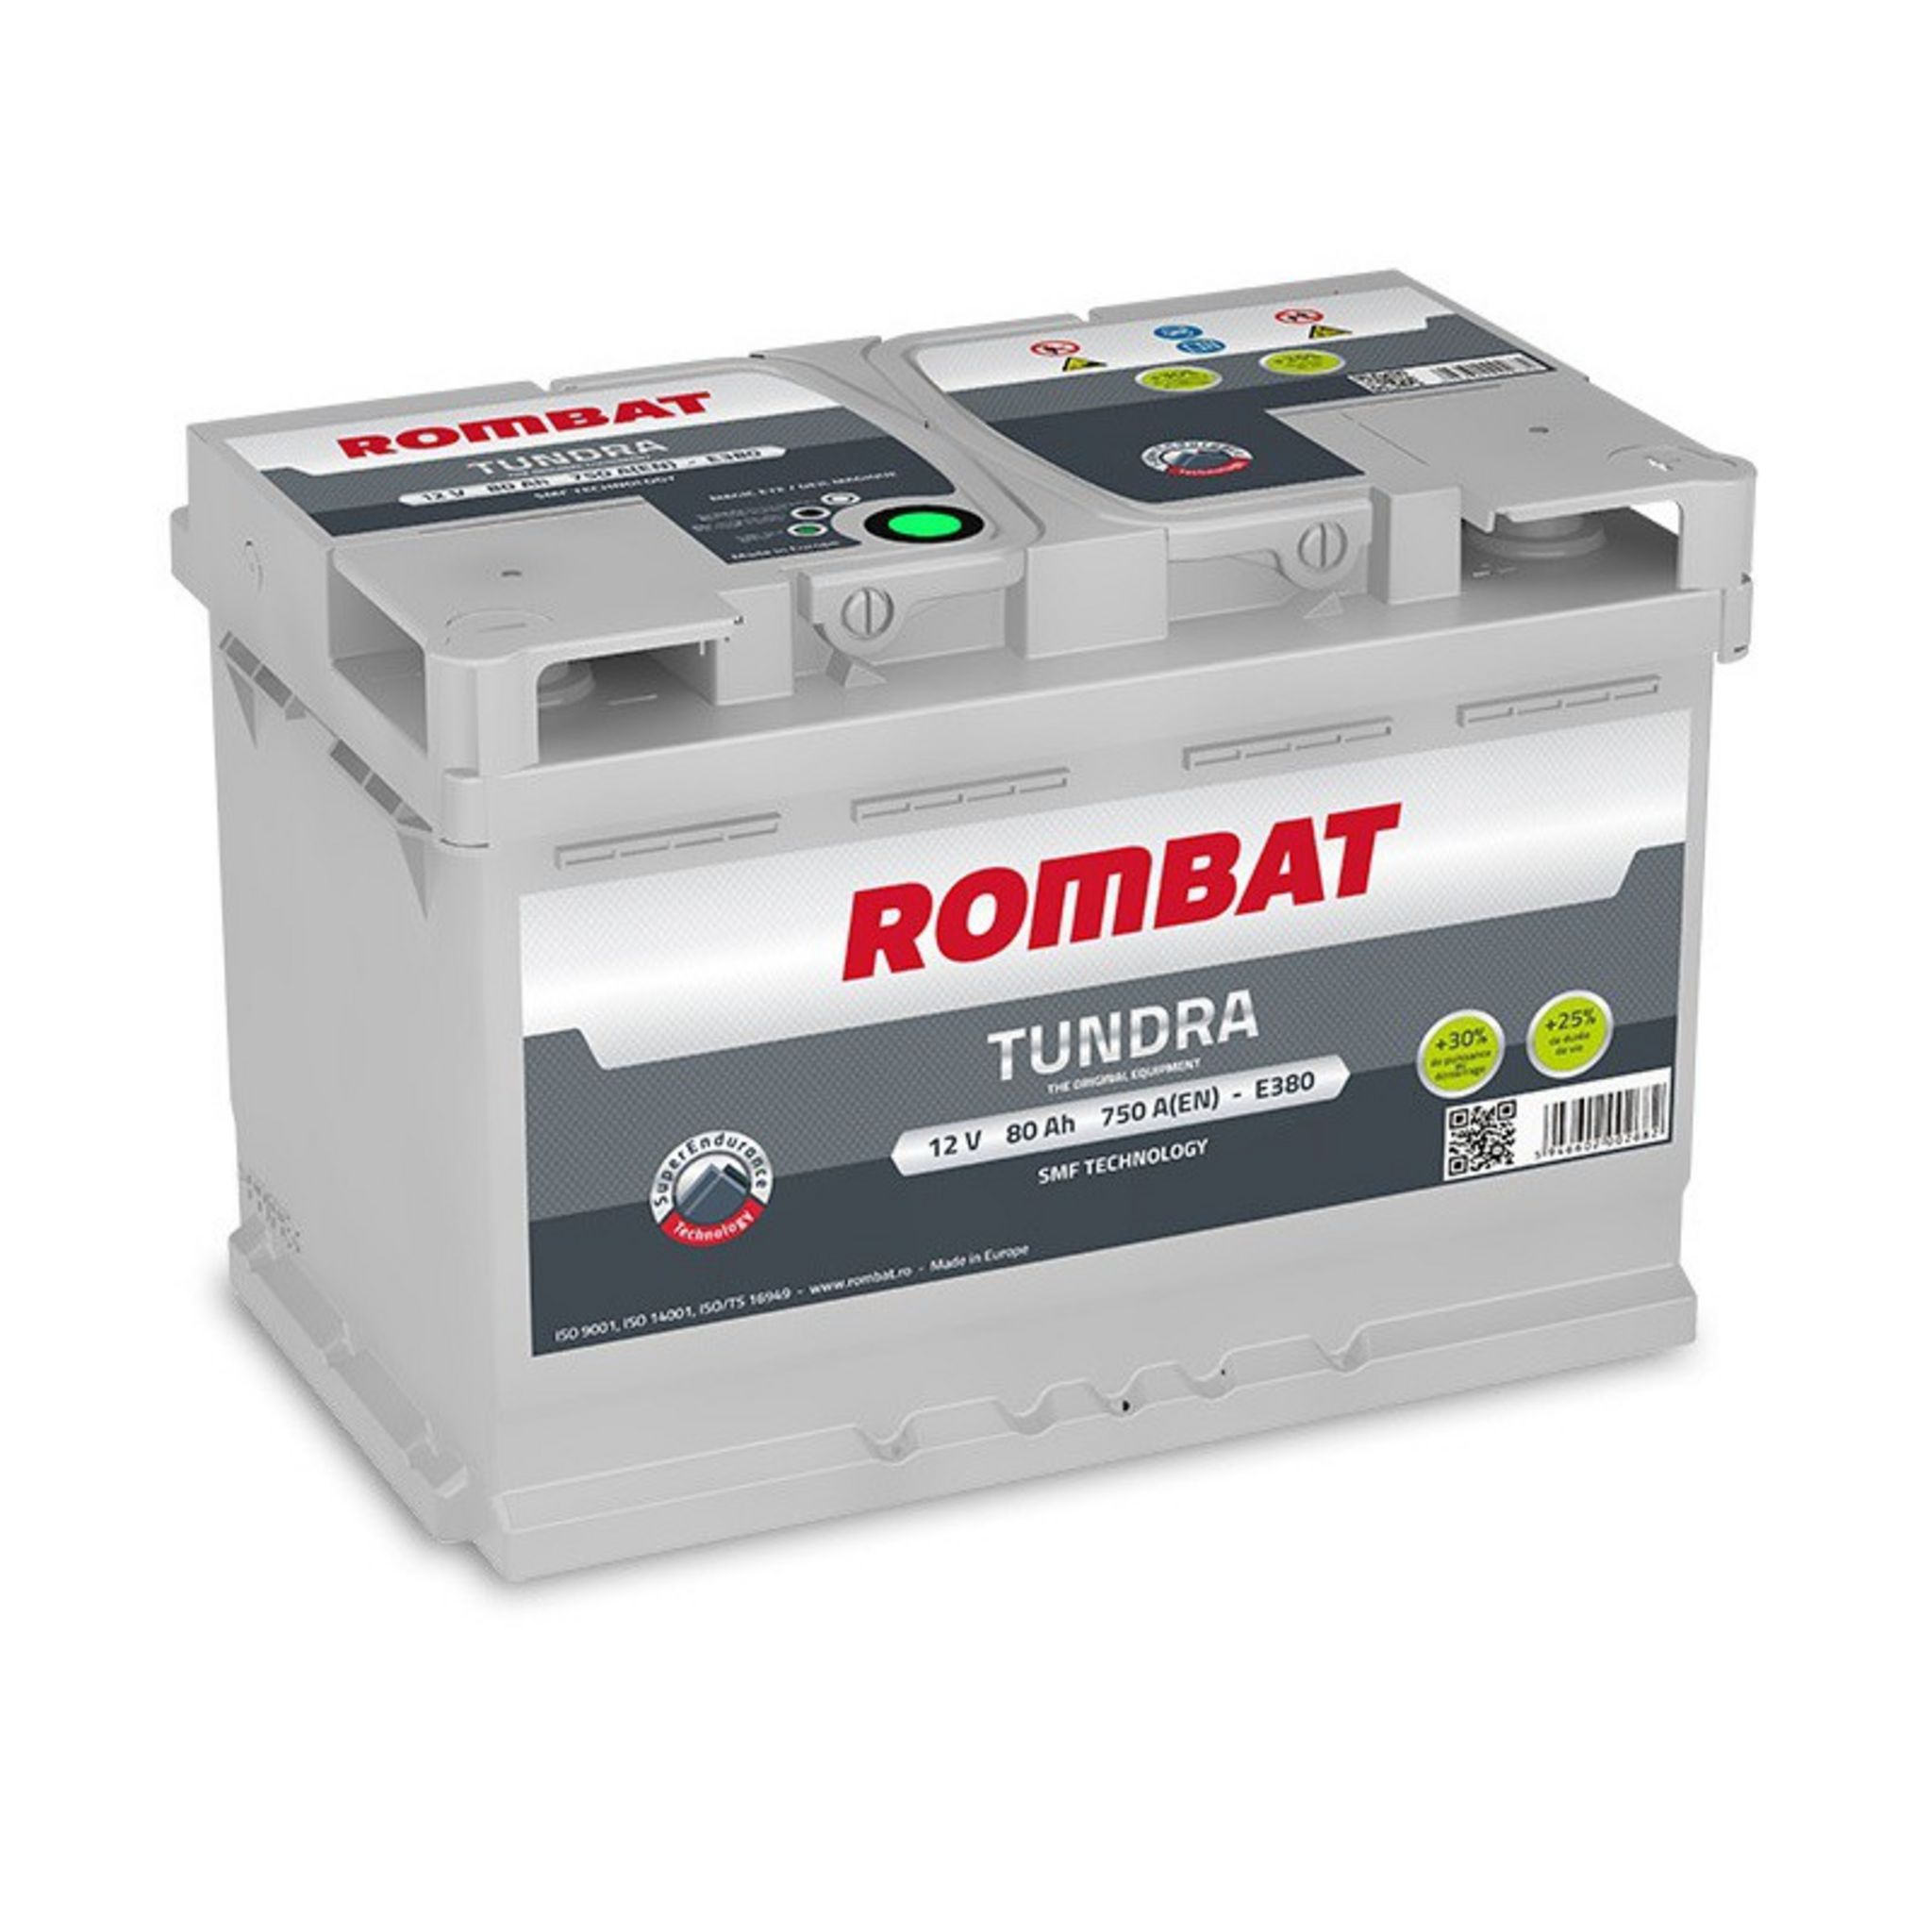 ROMBAT Batterie Rombat TUNDRA E380 12V 80ah 750A pas cher 